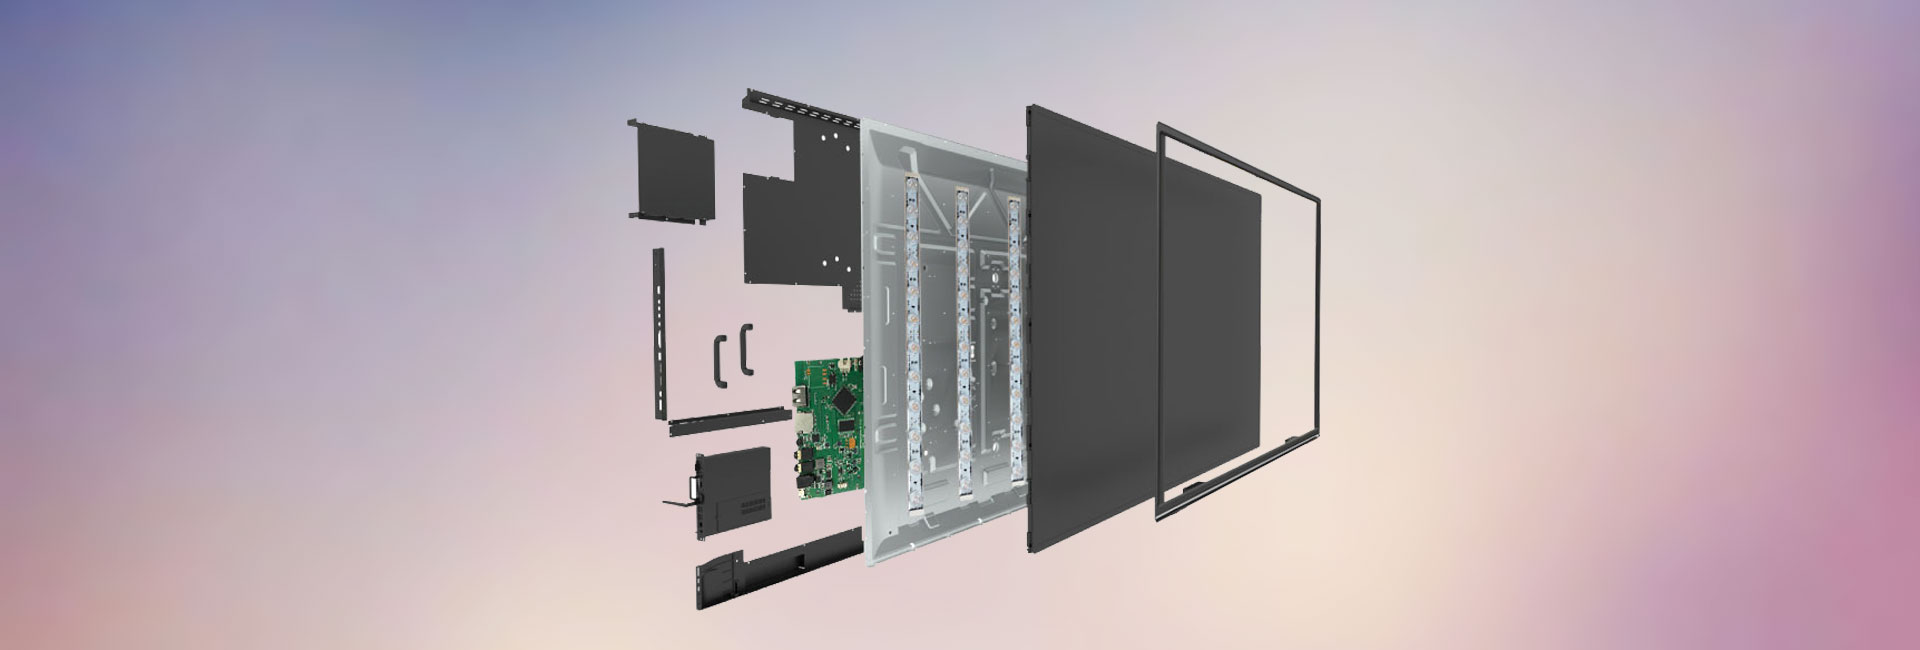 数码相框控制板解决方案PCBA开发设计